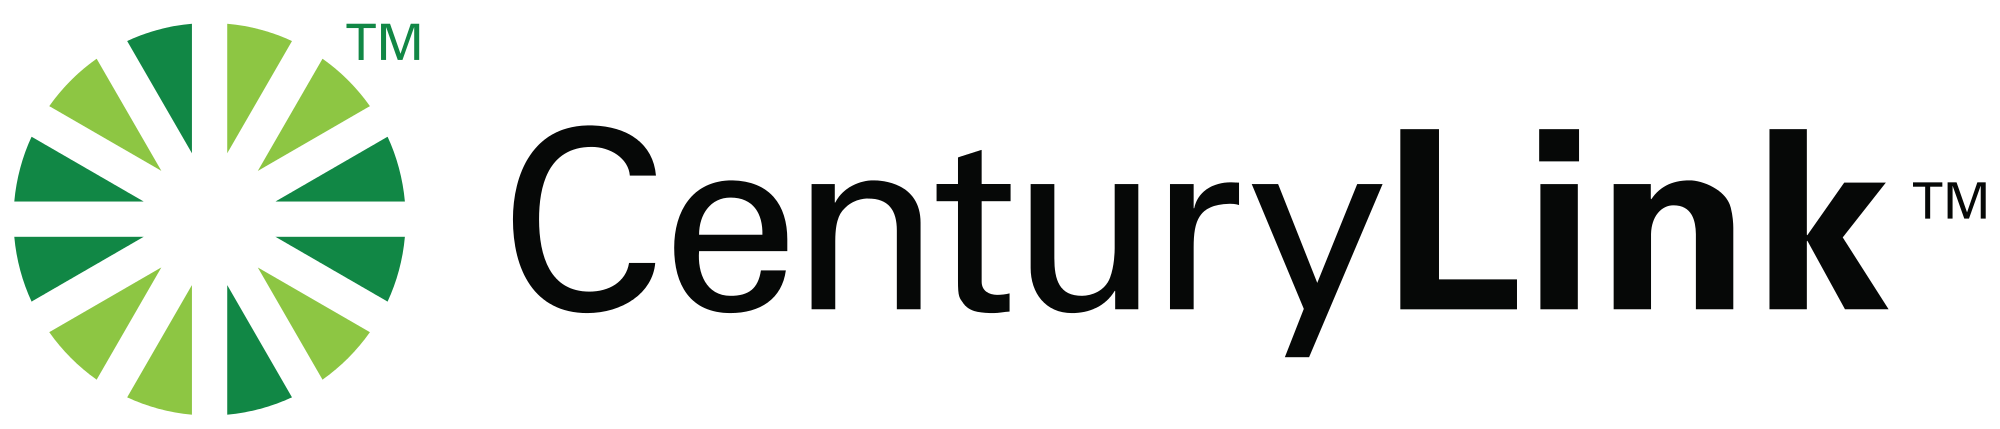 CenturyLink_2010_logo.png